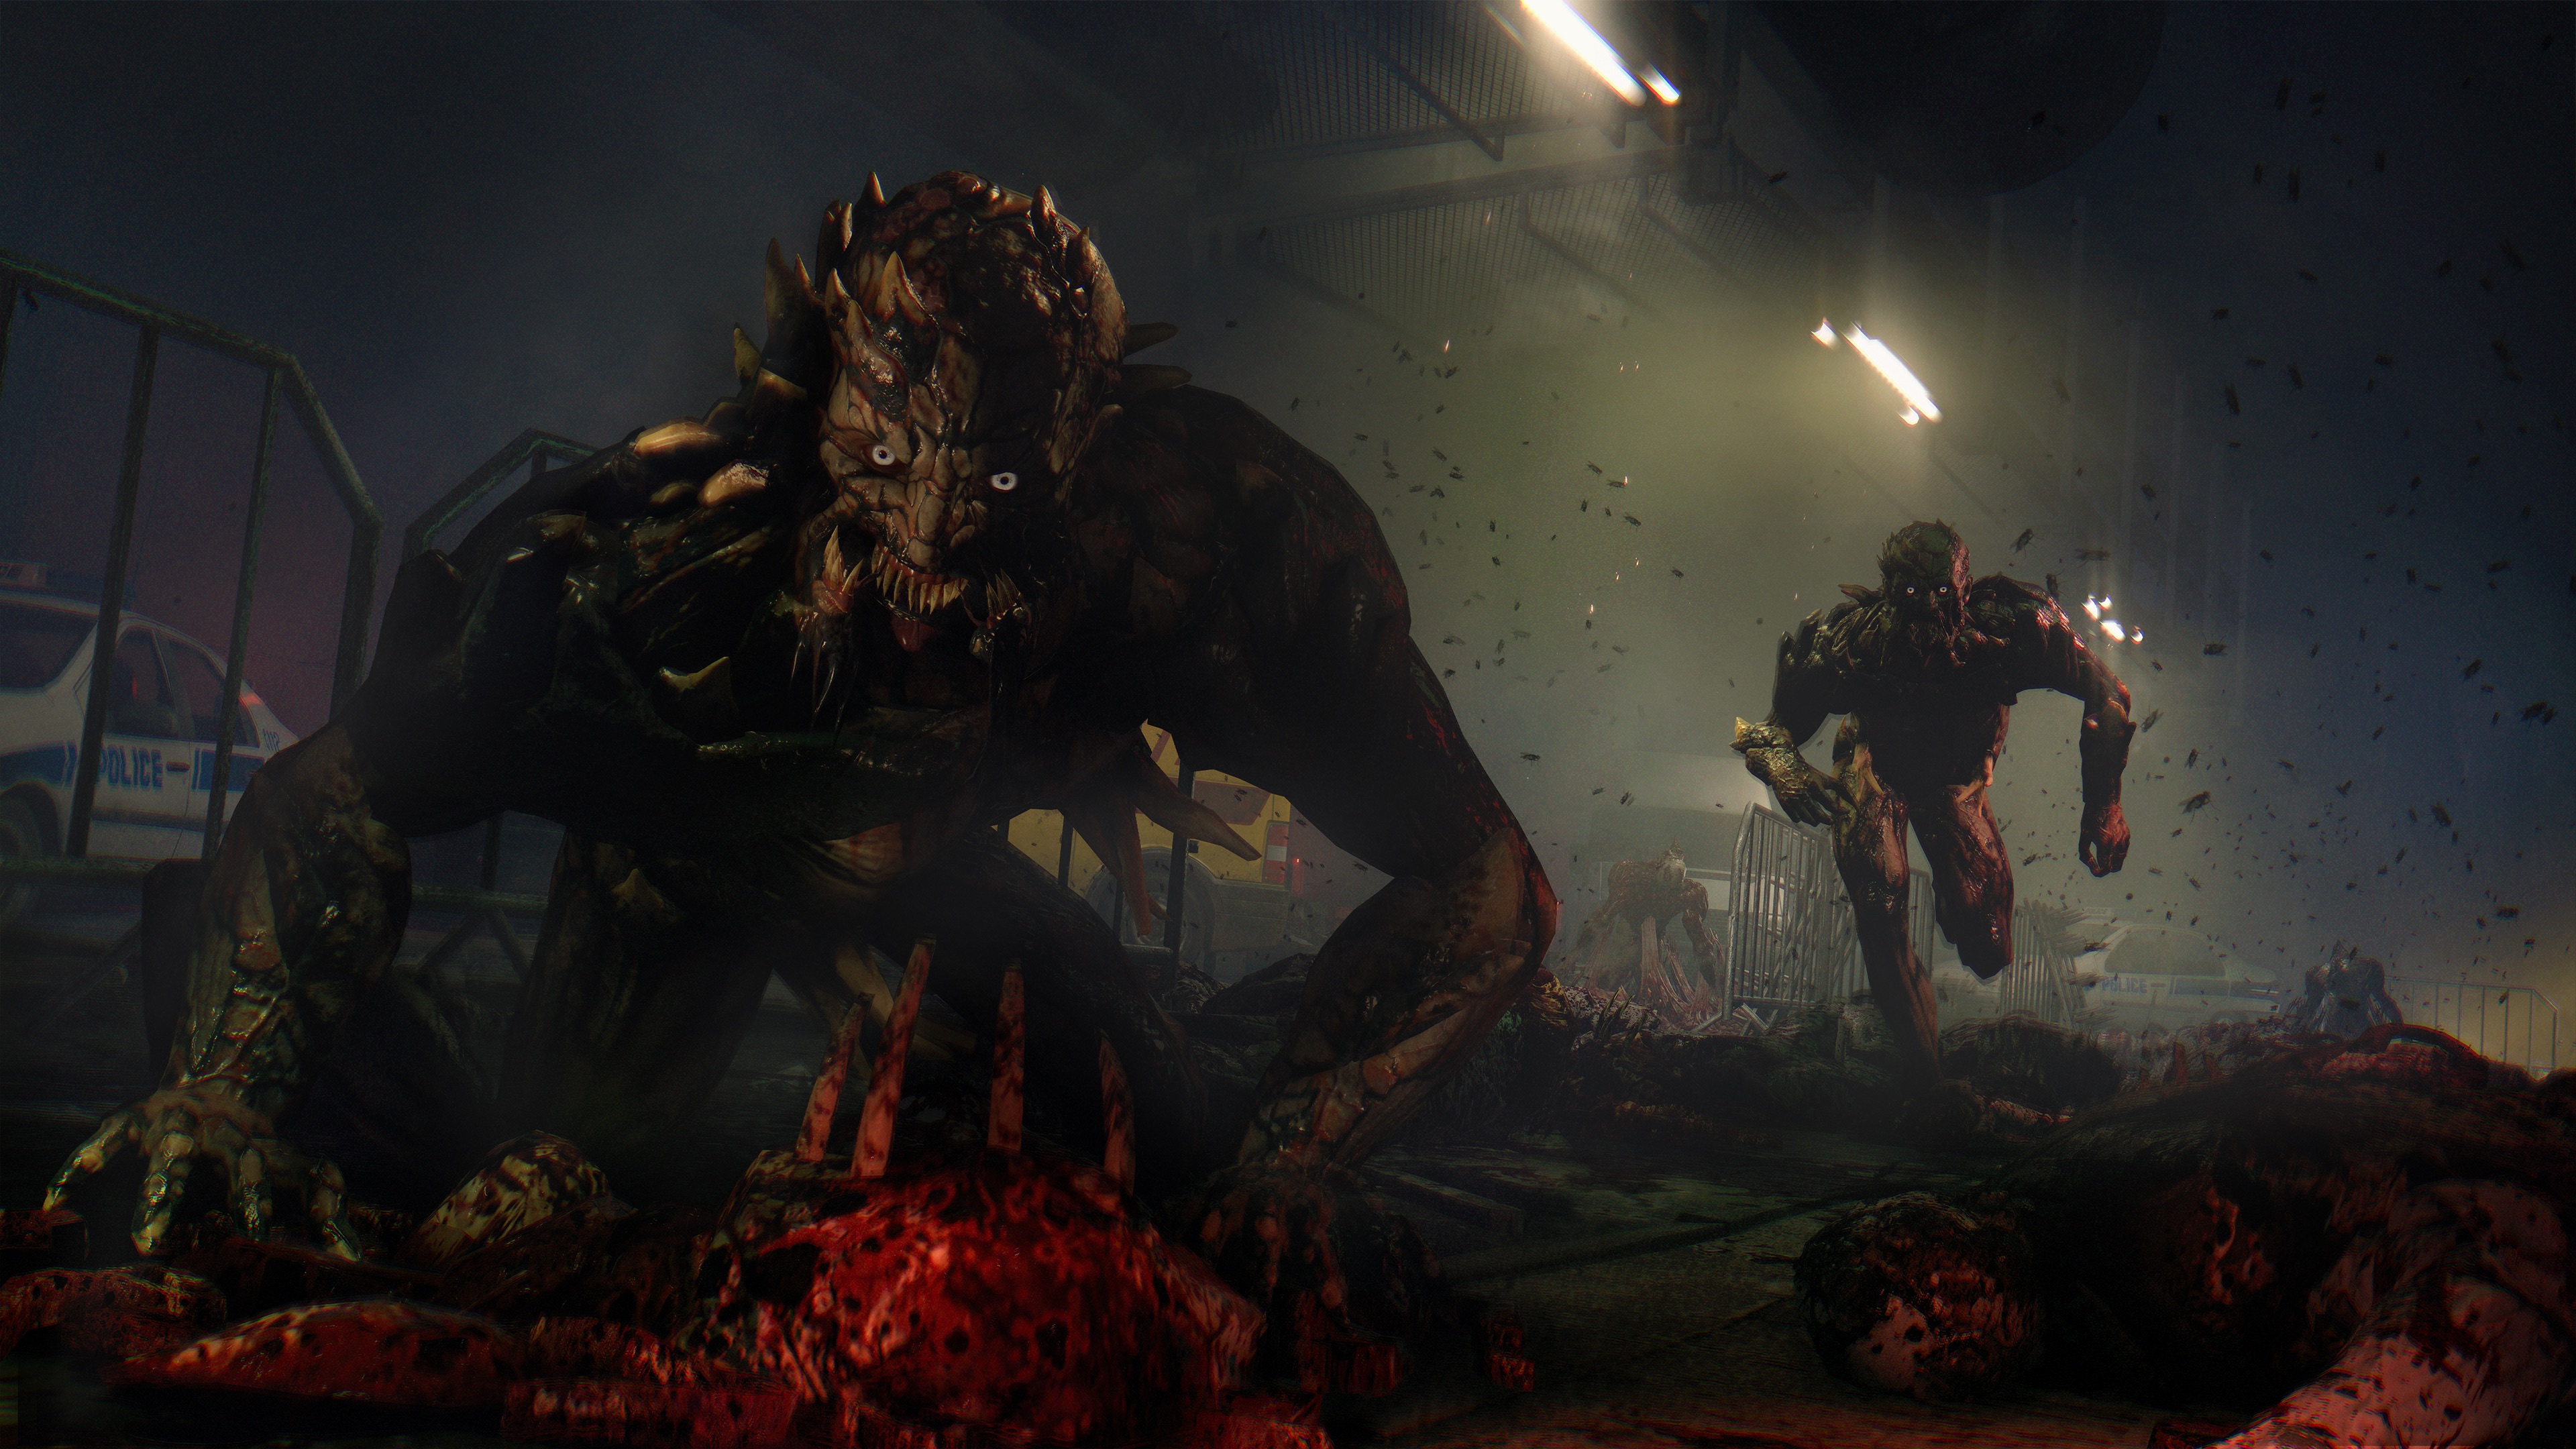 Dying Light Anniversary Edition é anunciado para PS4 e Xbox One - EvilHazard